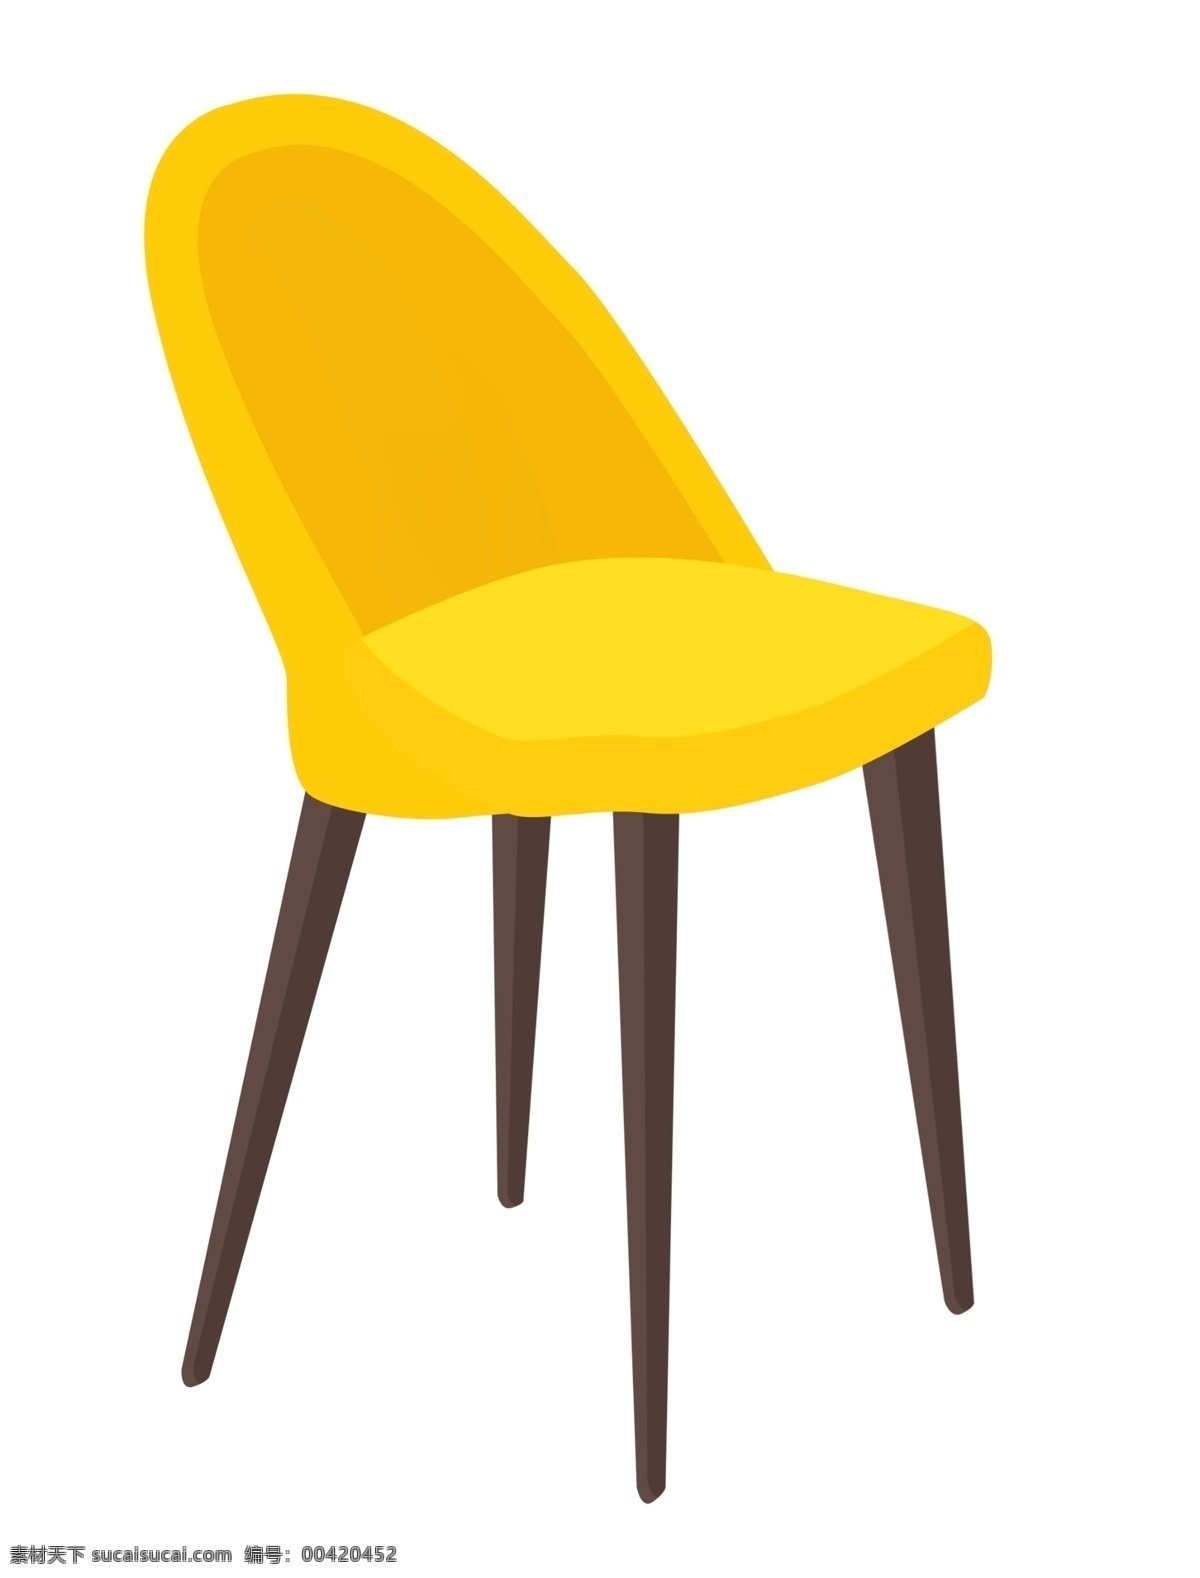 家具 靠背 椅子 插画 卡通椅子 靠背椅子 黄色椅子 木质椅子 插图 黄色靠背椅子 黄色家具